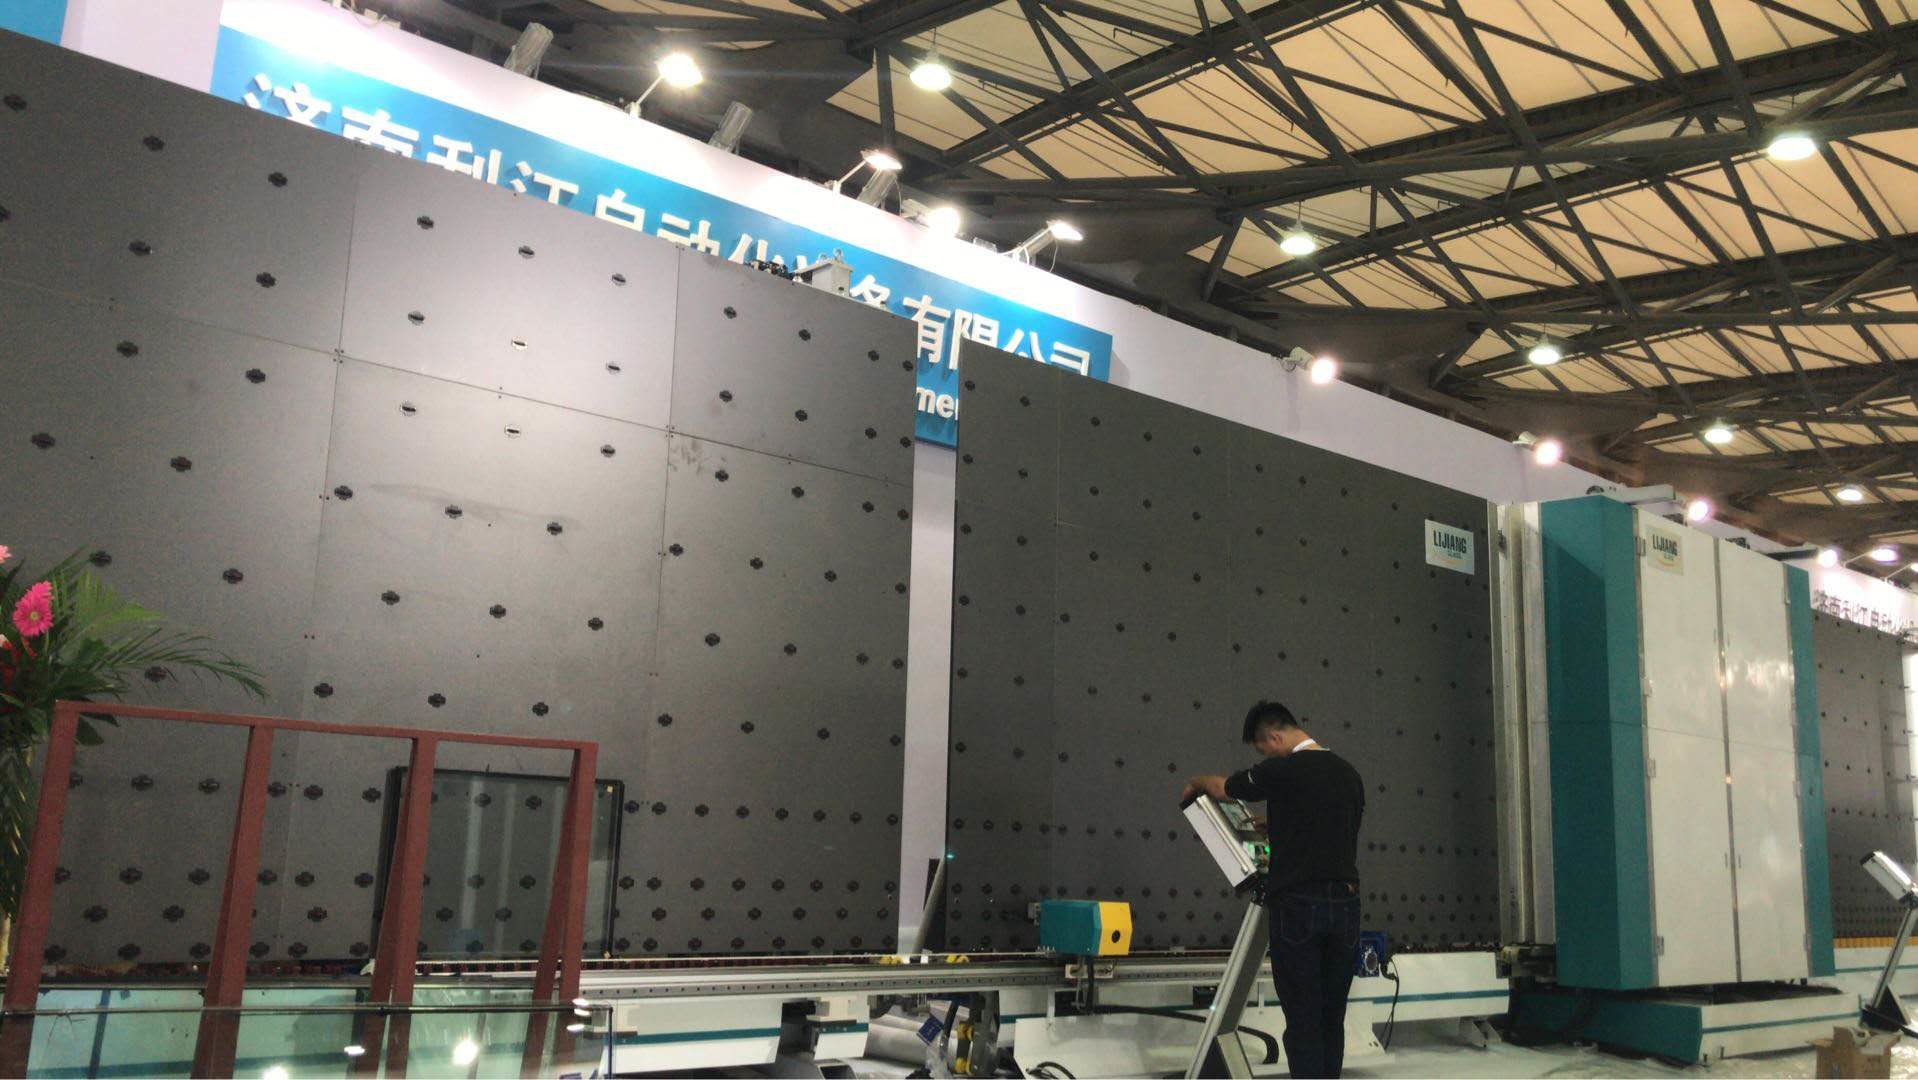 Jinan Lijiang Automation Equipment Co., Ltd.